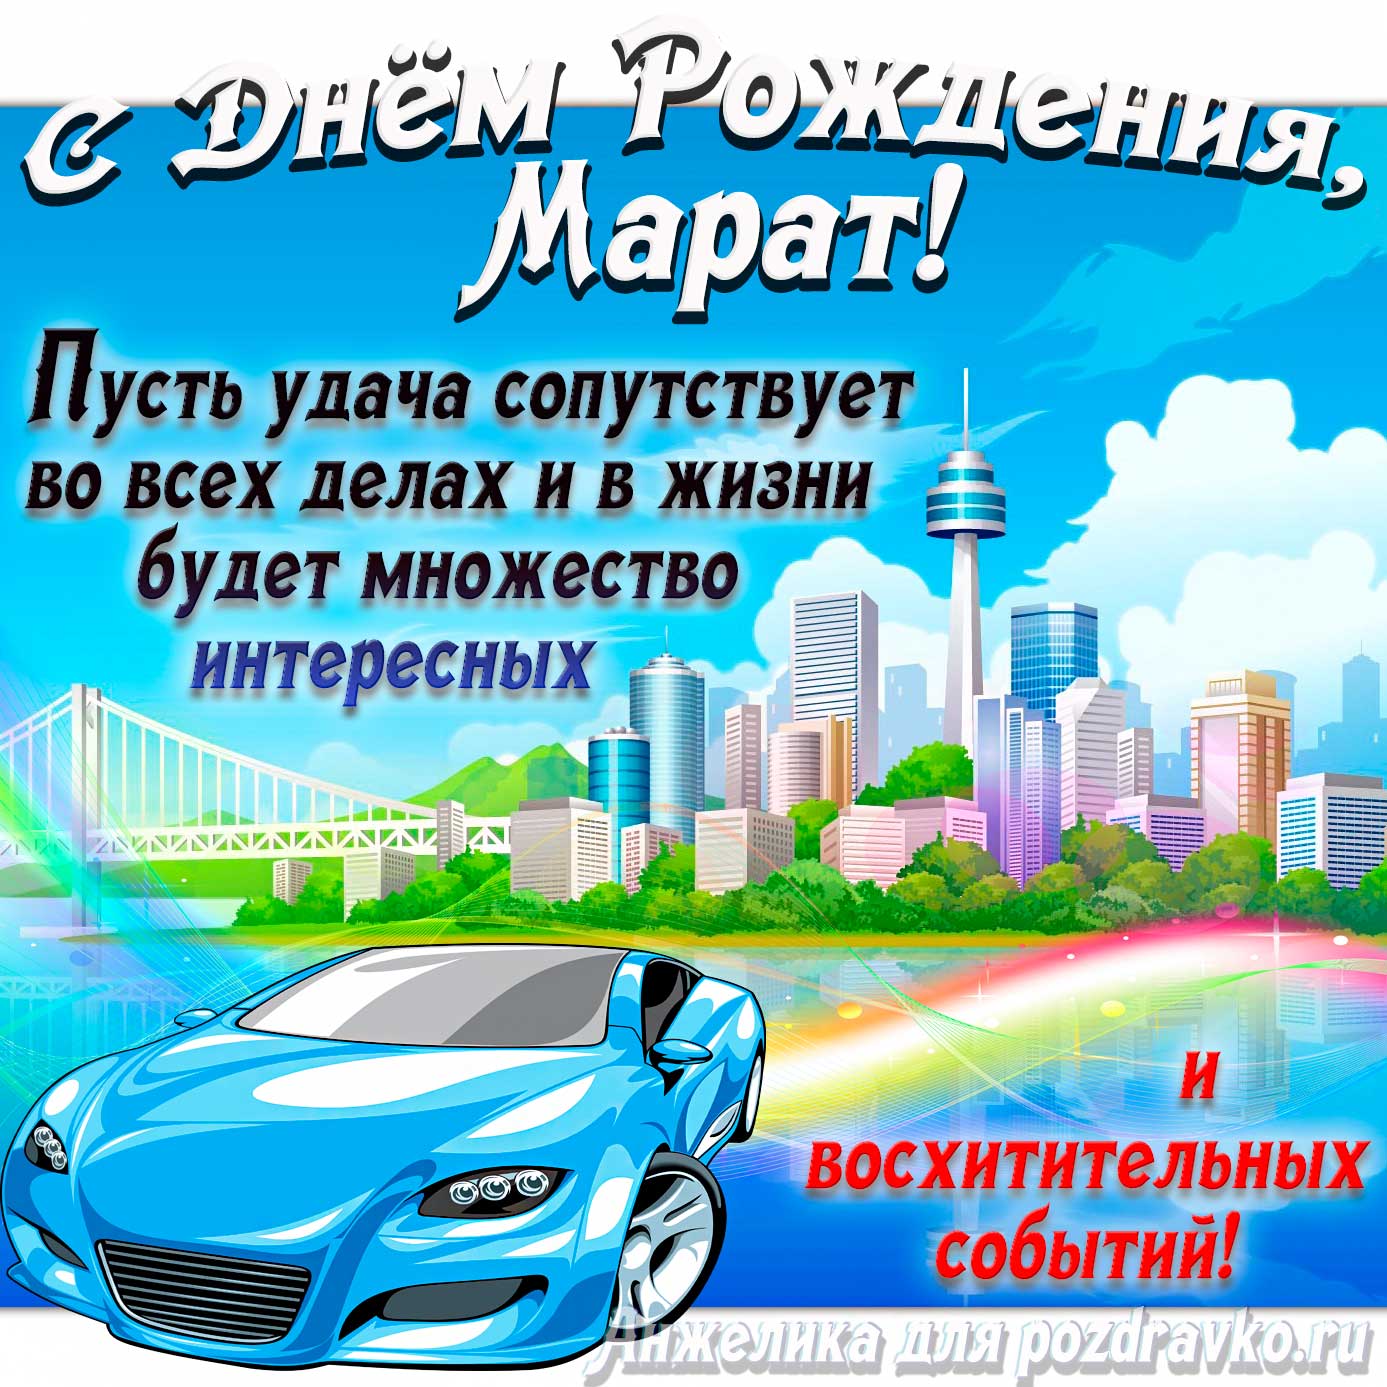 Открытка - с Днём Рождения Марат с голубой машиной и пожеланием. Скачать бесплатно или отправить картинку.